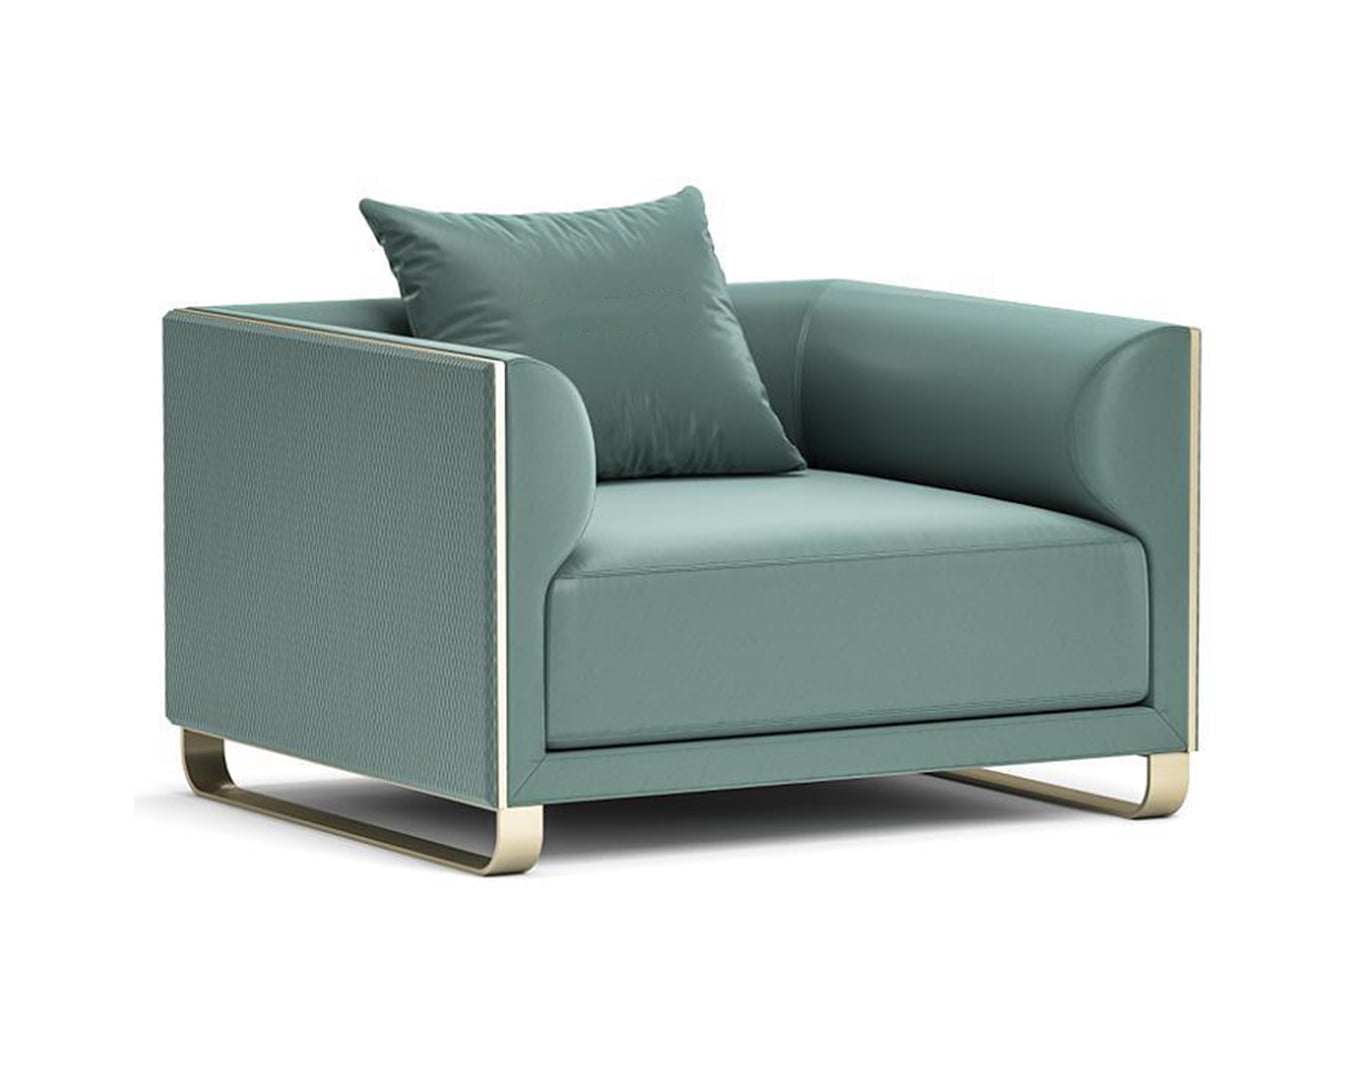 greyish turquoise single seat minimalis sofa